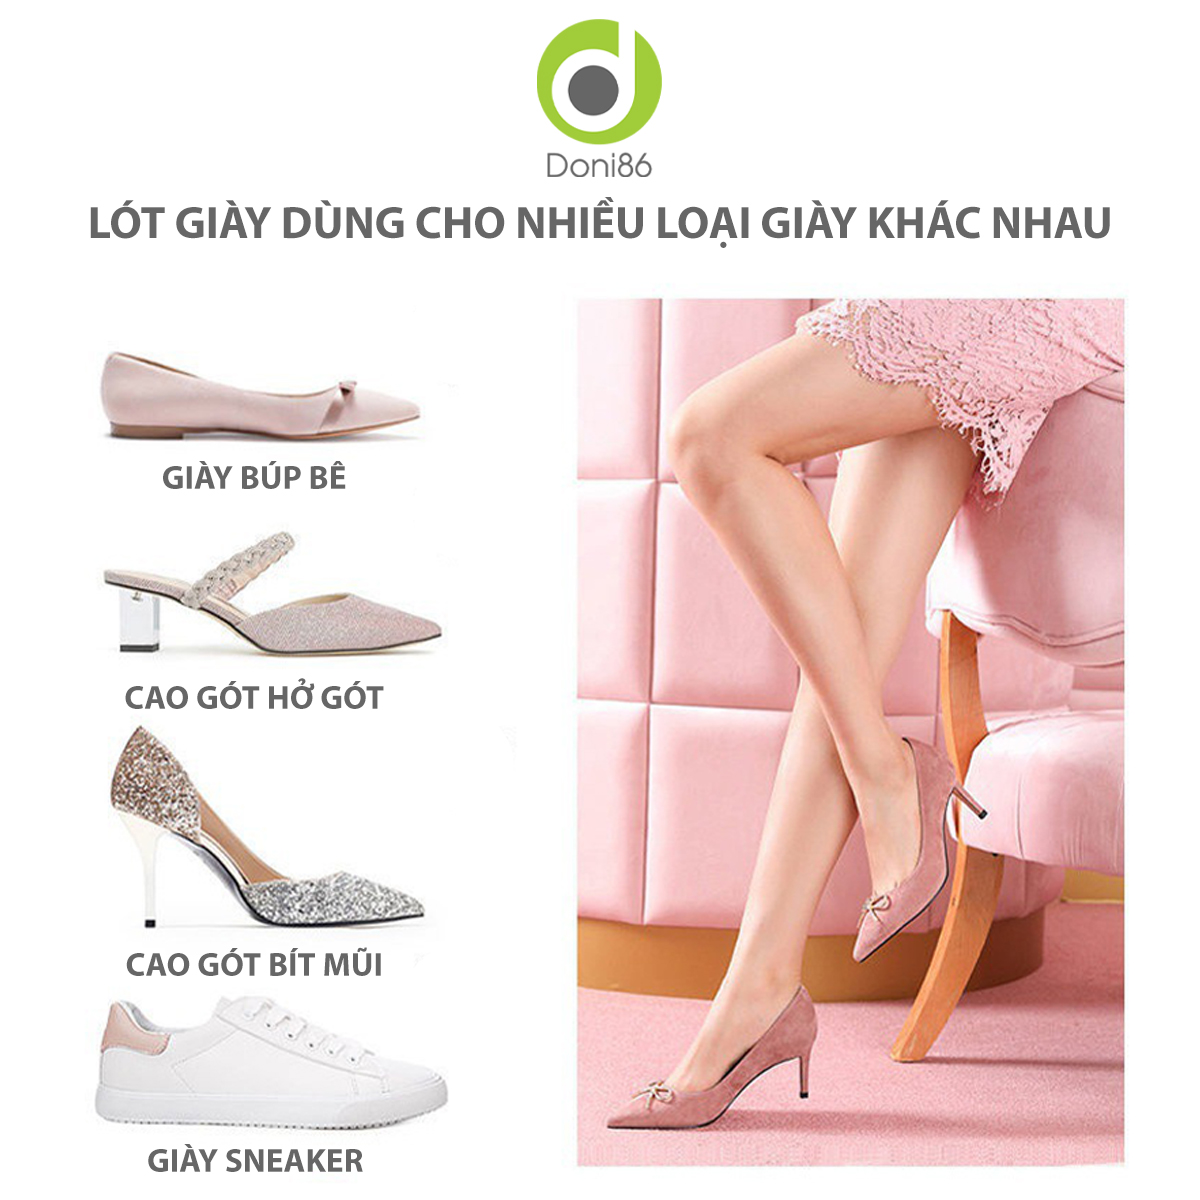 Combo 4 cặp lót giày cao gót giảm đau lòng bàn chân phía mũi lót giày hút mồ hôi chân khi mang giày bít mũi PK14-4